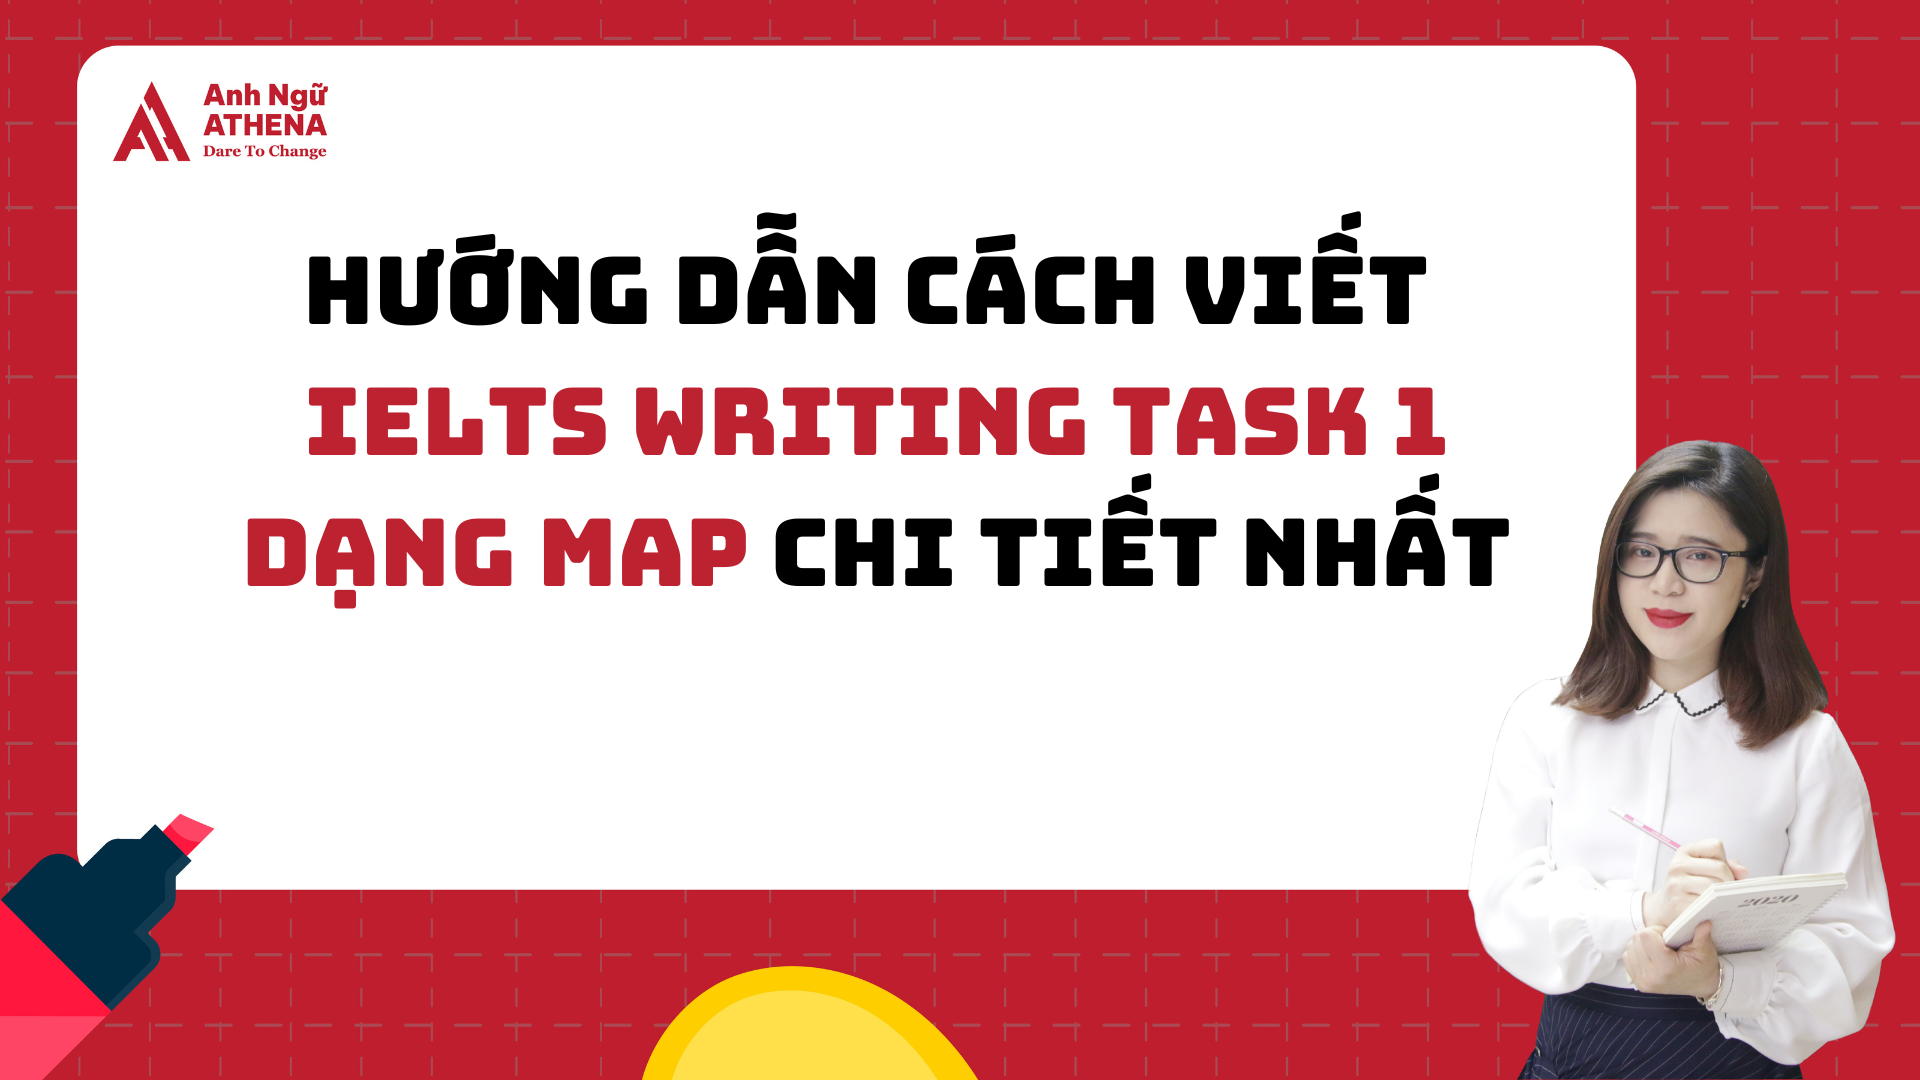 Hướng dẫn cách viết IELTS  Writing Task 1 - Map chi tiết nhất